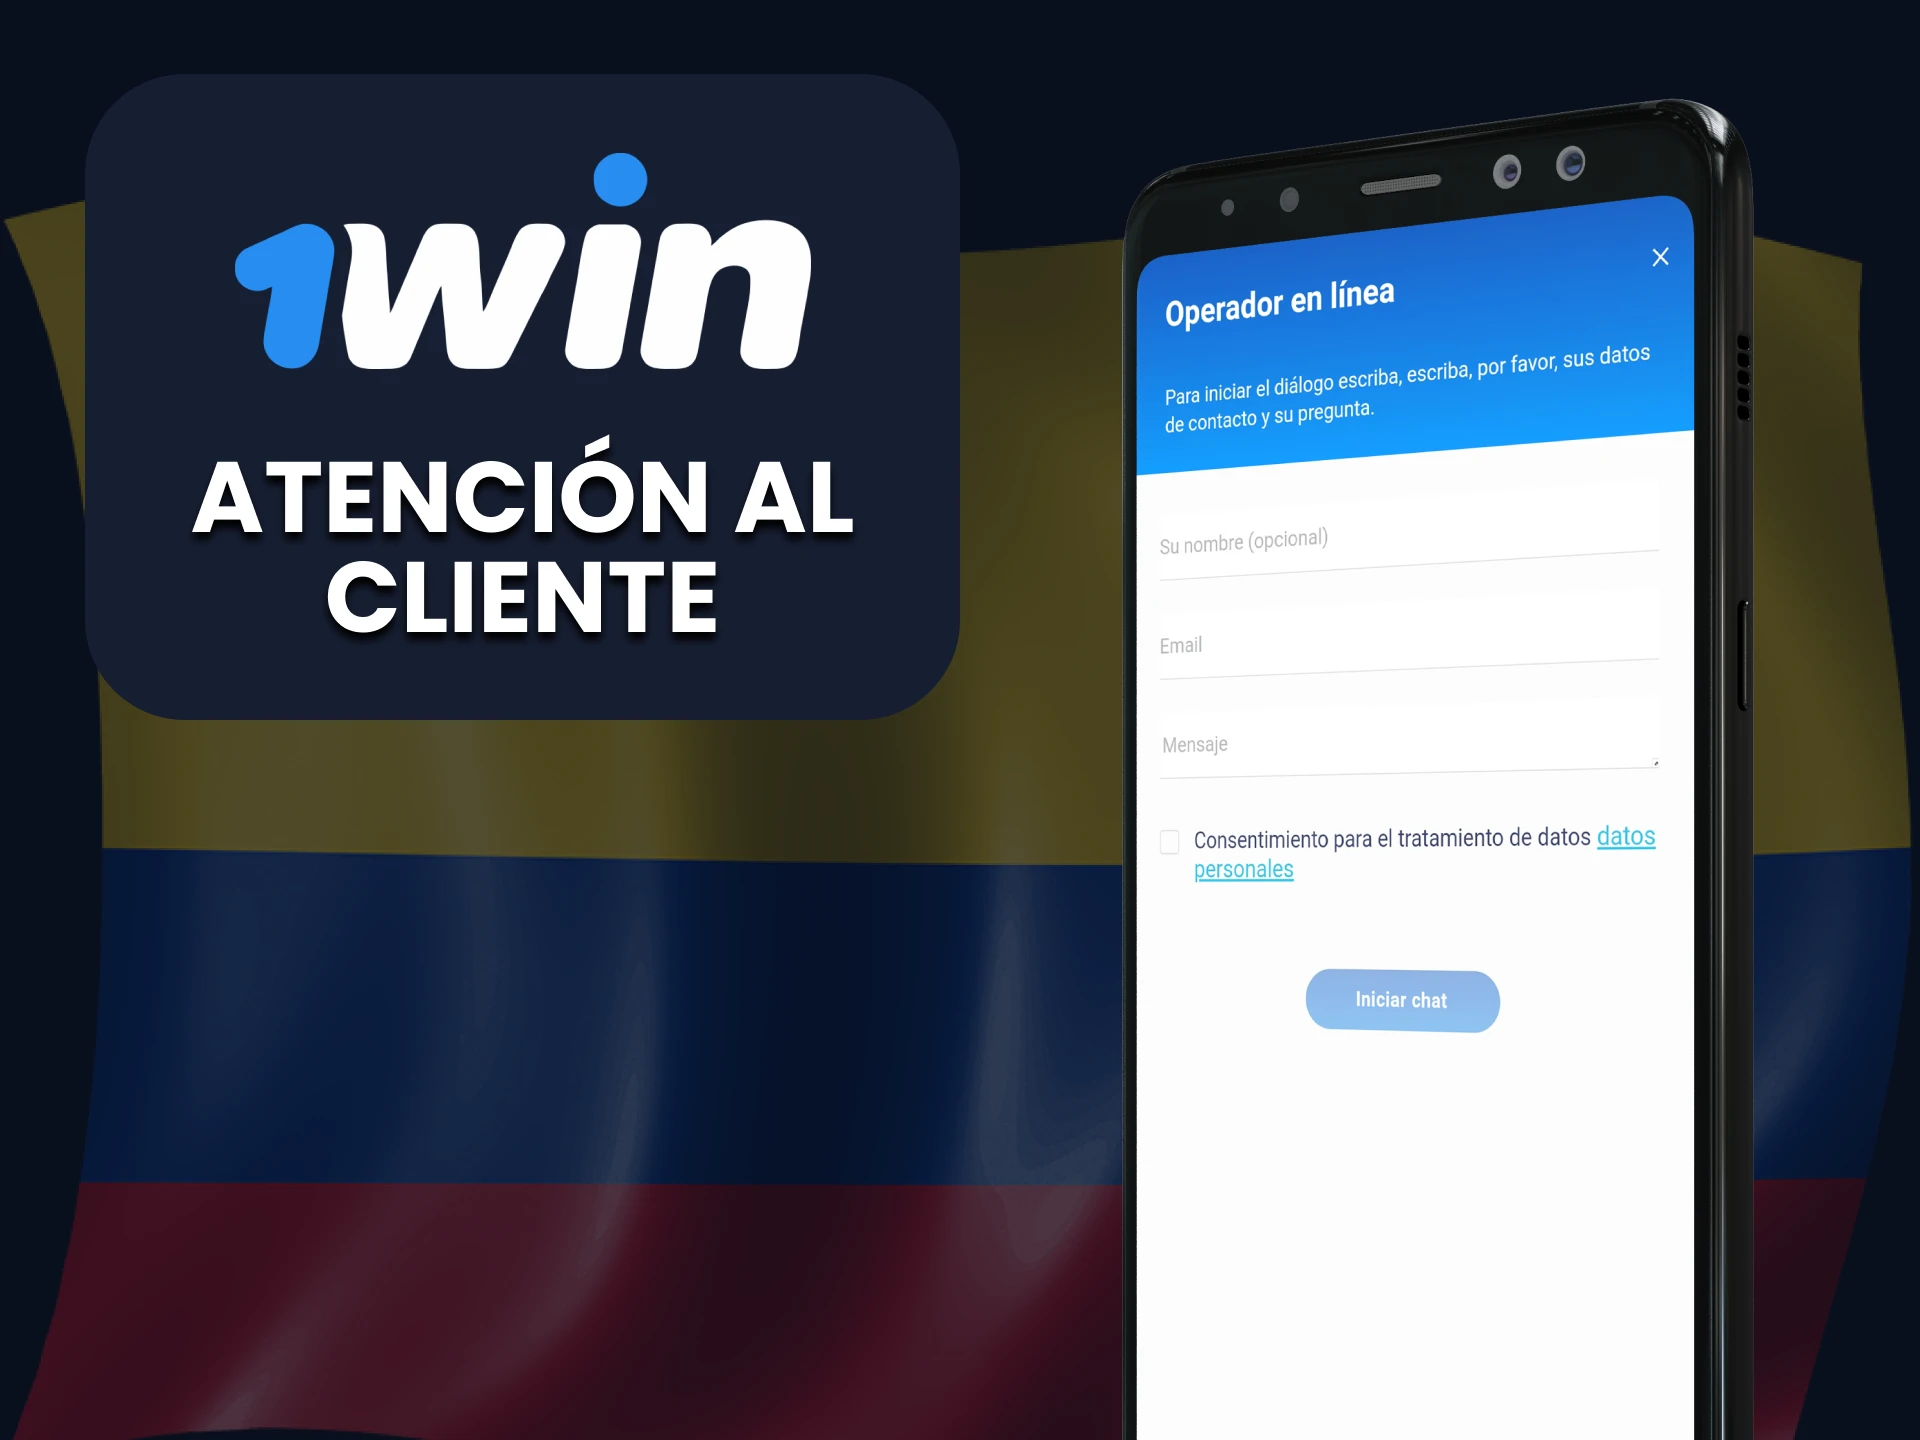 La aplicación 1win dispone de un chat con soporte técnico.